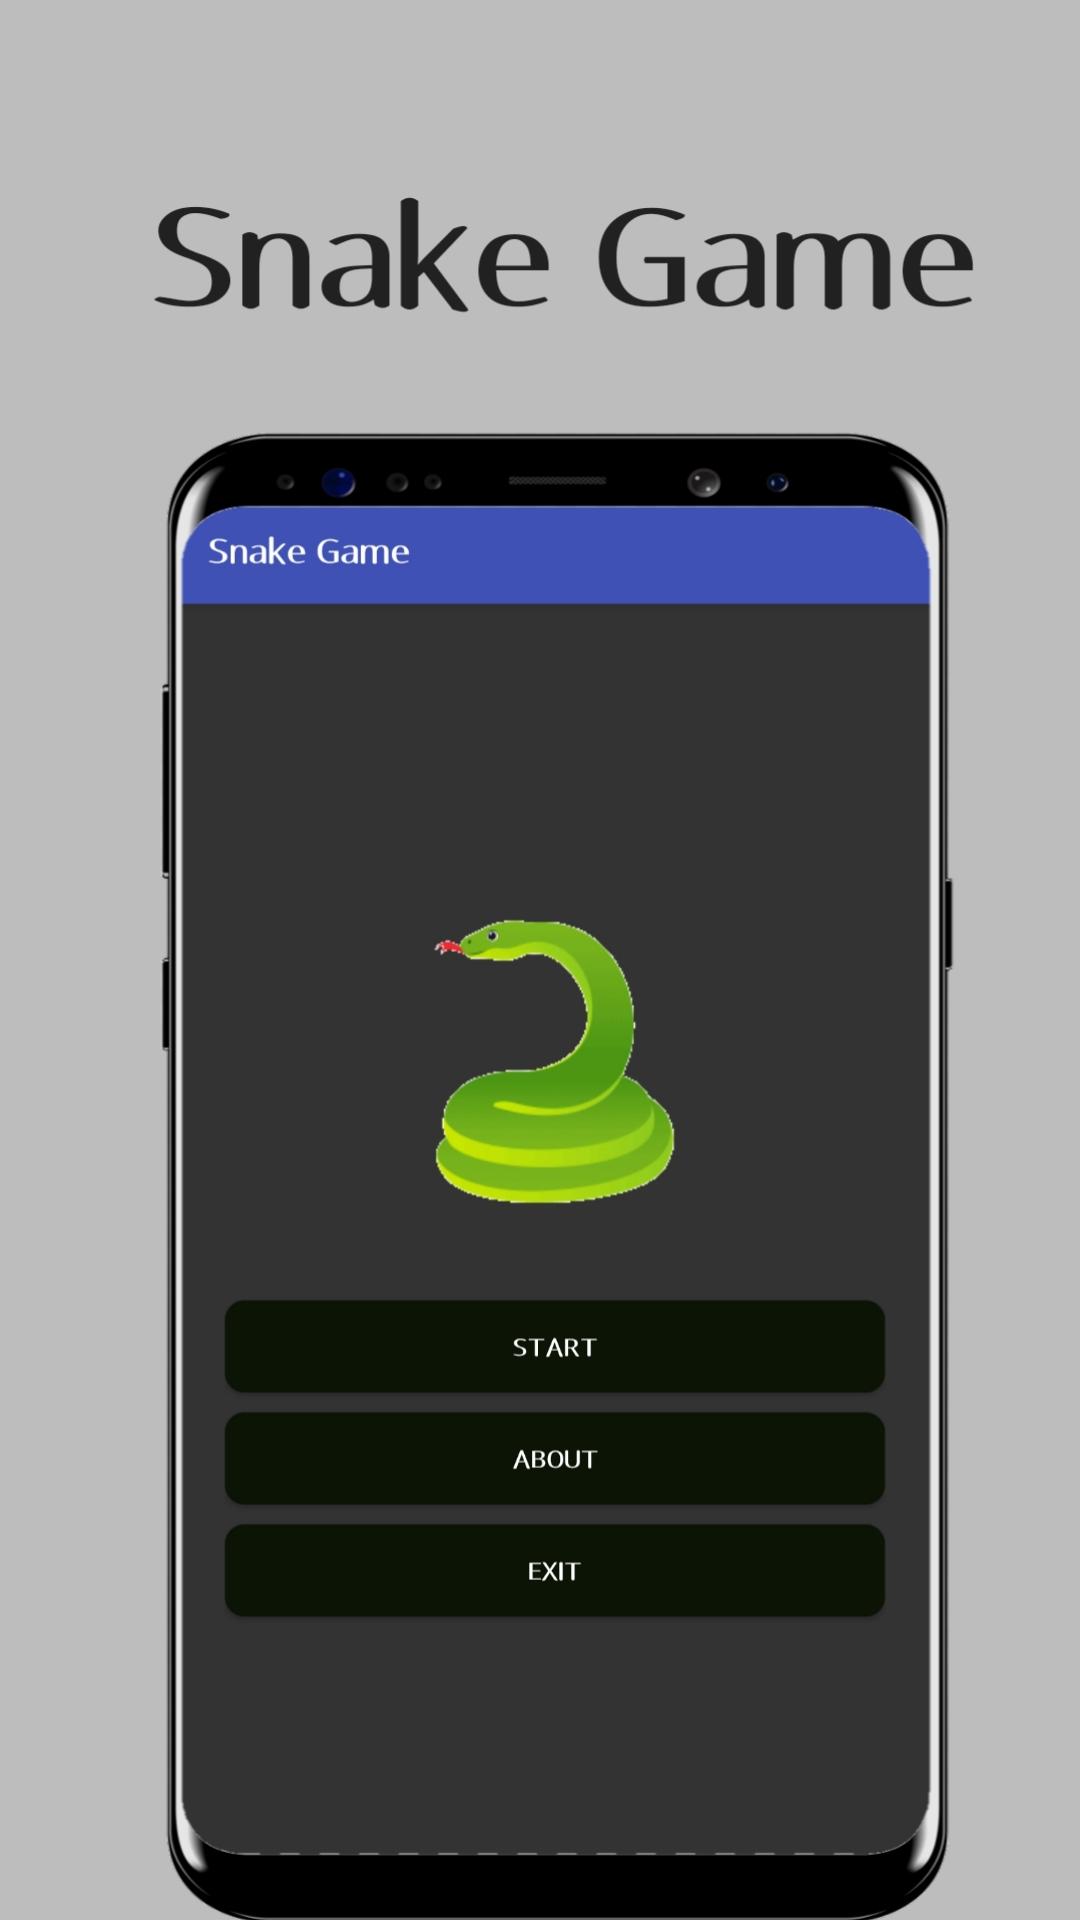 Download do APK de Jogo da Cobrinha Clássica para Android